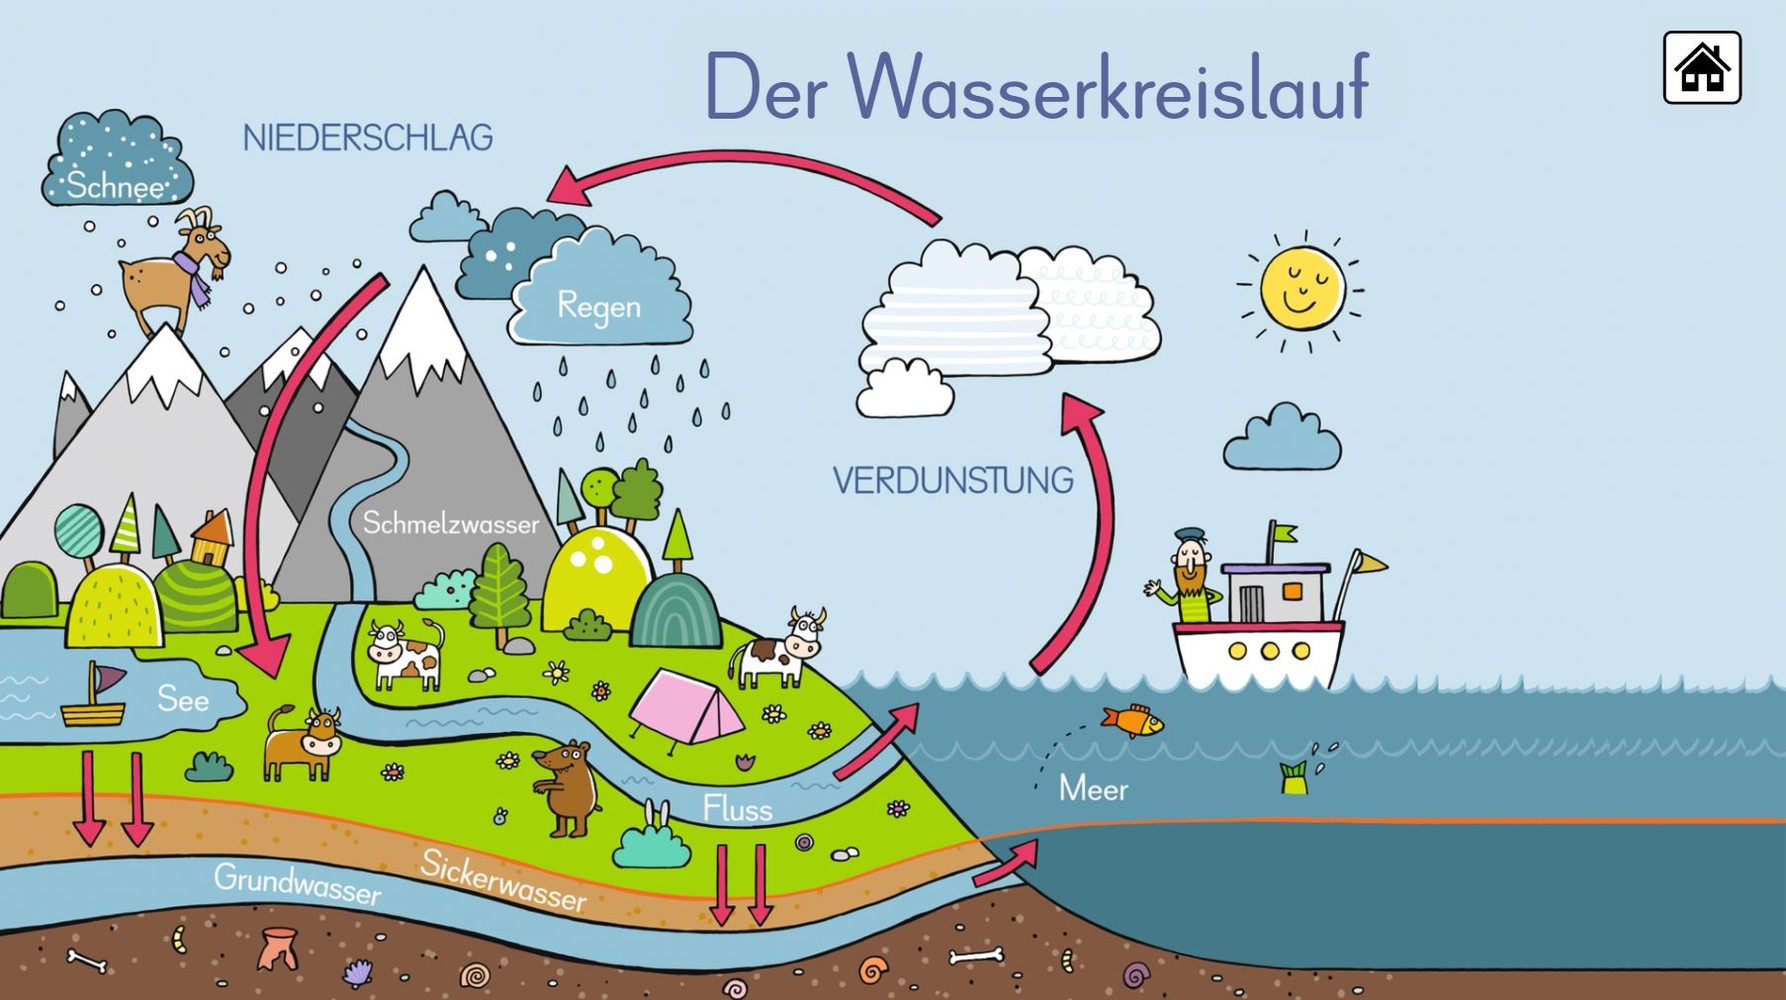 6 digitale Merk-Bilder für den Sachunterricht: Die Ernährungspyramide, Europa, Deutschland, Der Wasserkreislauf, Unsere Bäume, Unser Sonnensystem - Pro-Lizenz - Windows